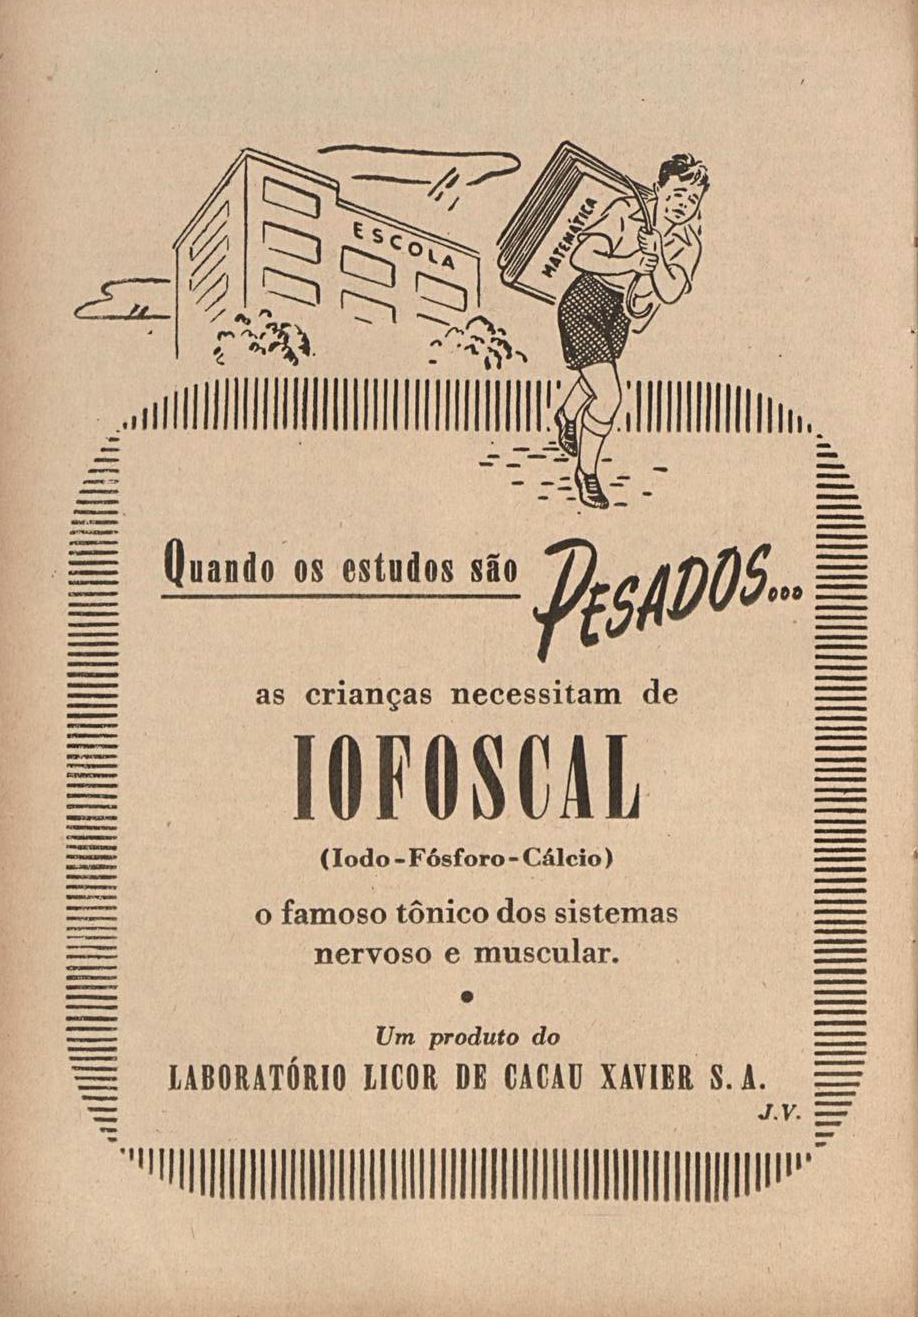 Anúncio veiculado em 1953 apresentando os benefícios do fortificante Iofoscal